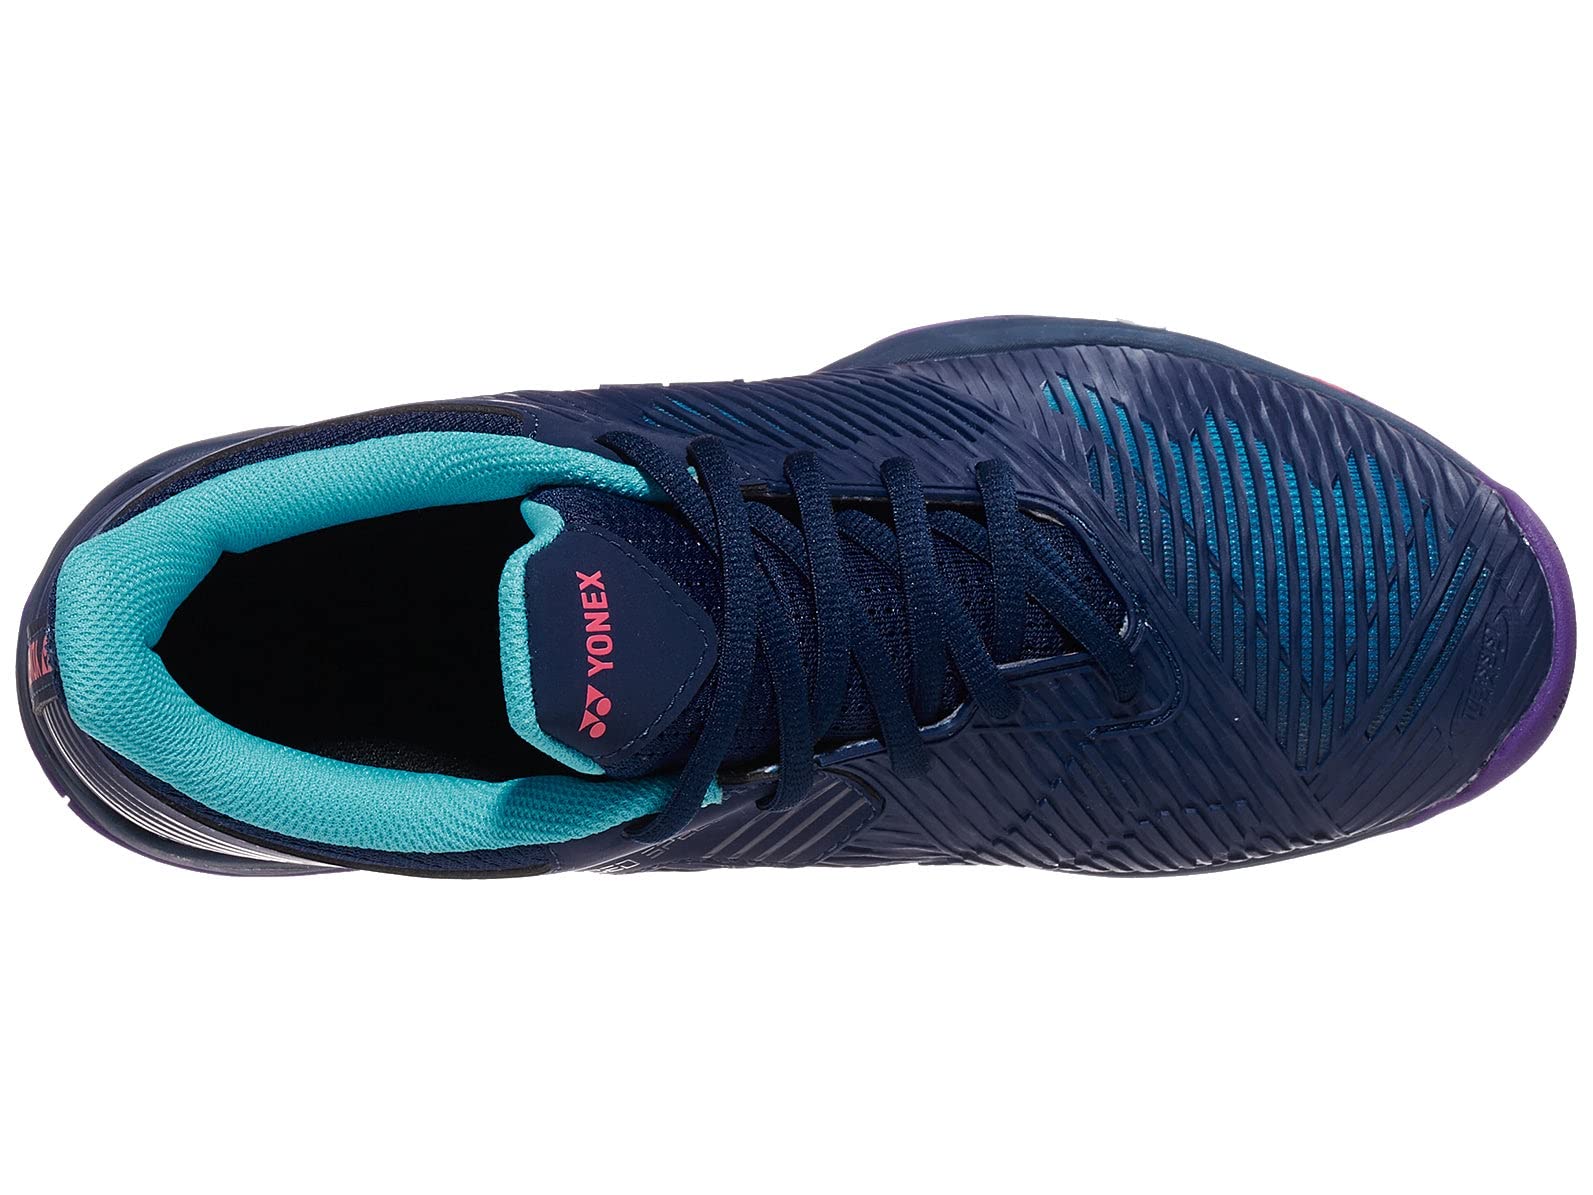 YONEX Women's Sonicage 2 All-Court Tennis Shoes, Navy/Blue Purple (US Size 10.5)